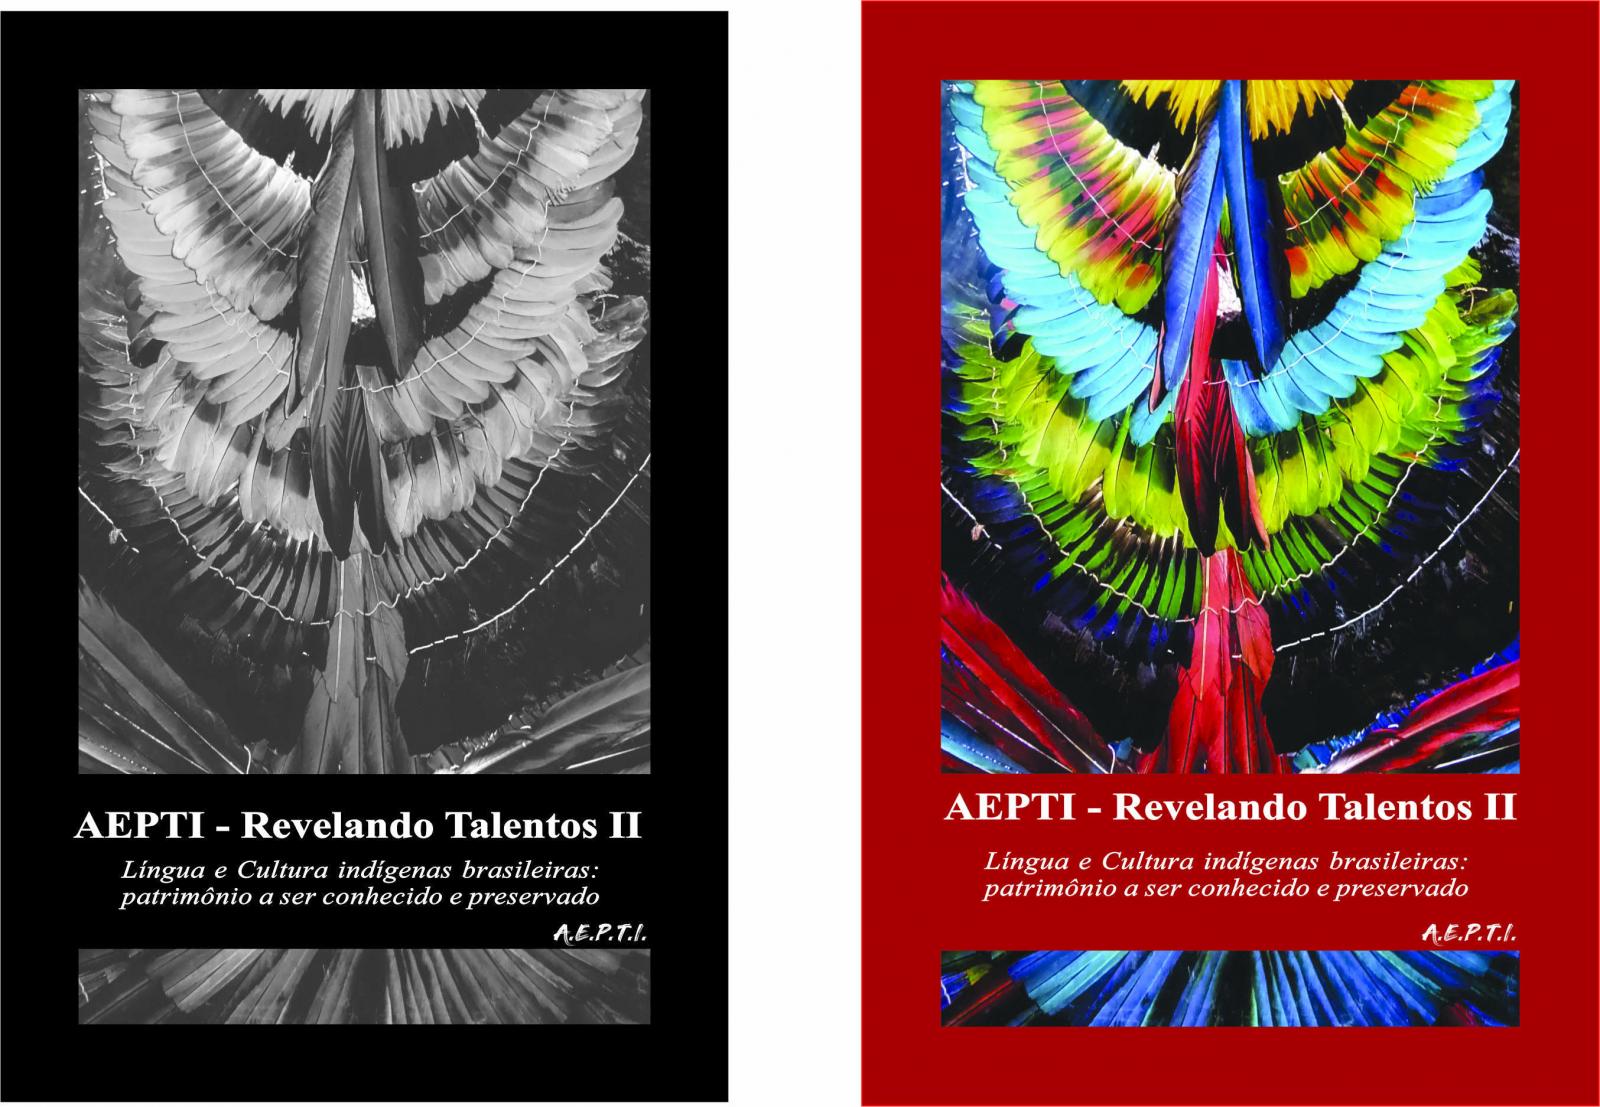 Tema do livro Revelando Talentos neste ano é ‘Língua e Cultura indígenas brasileiras’